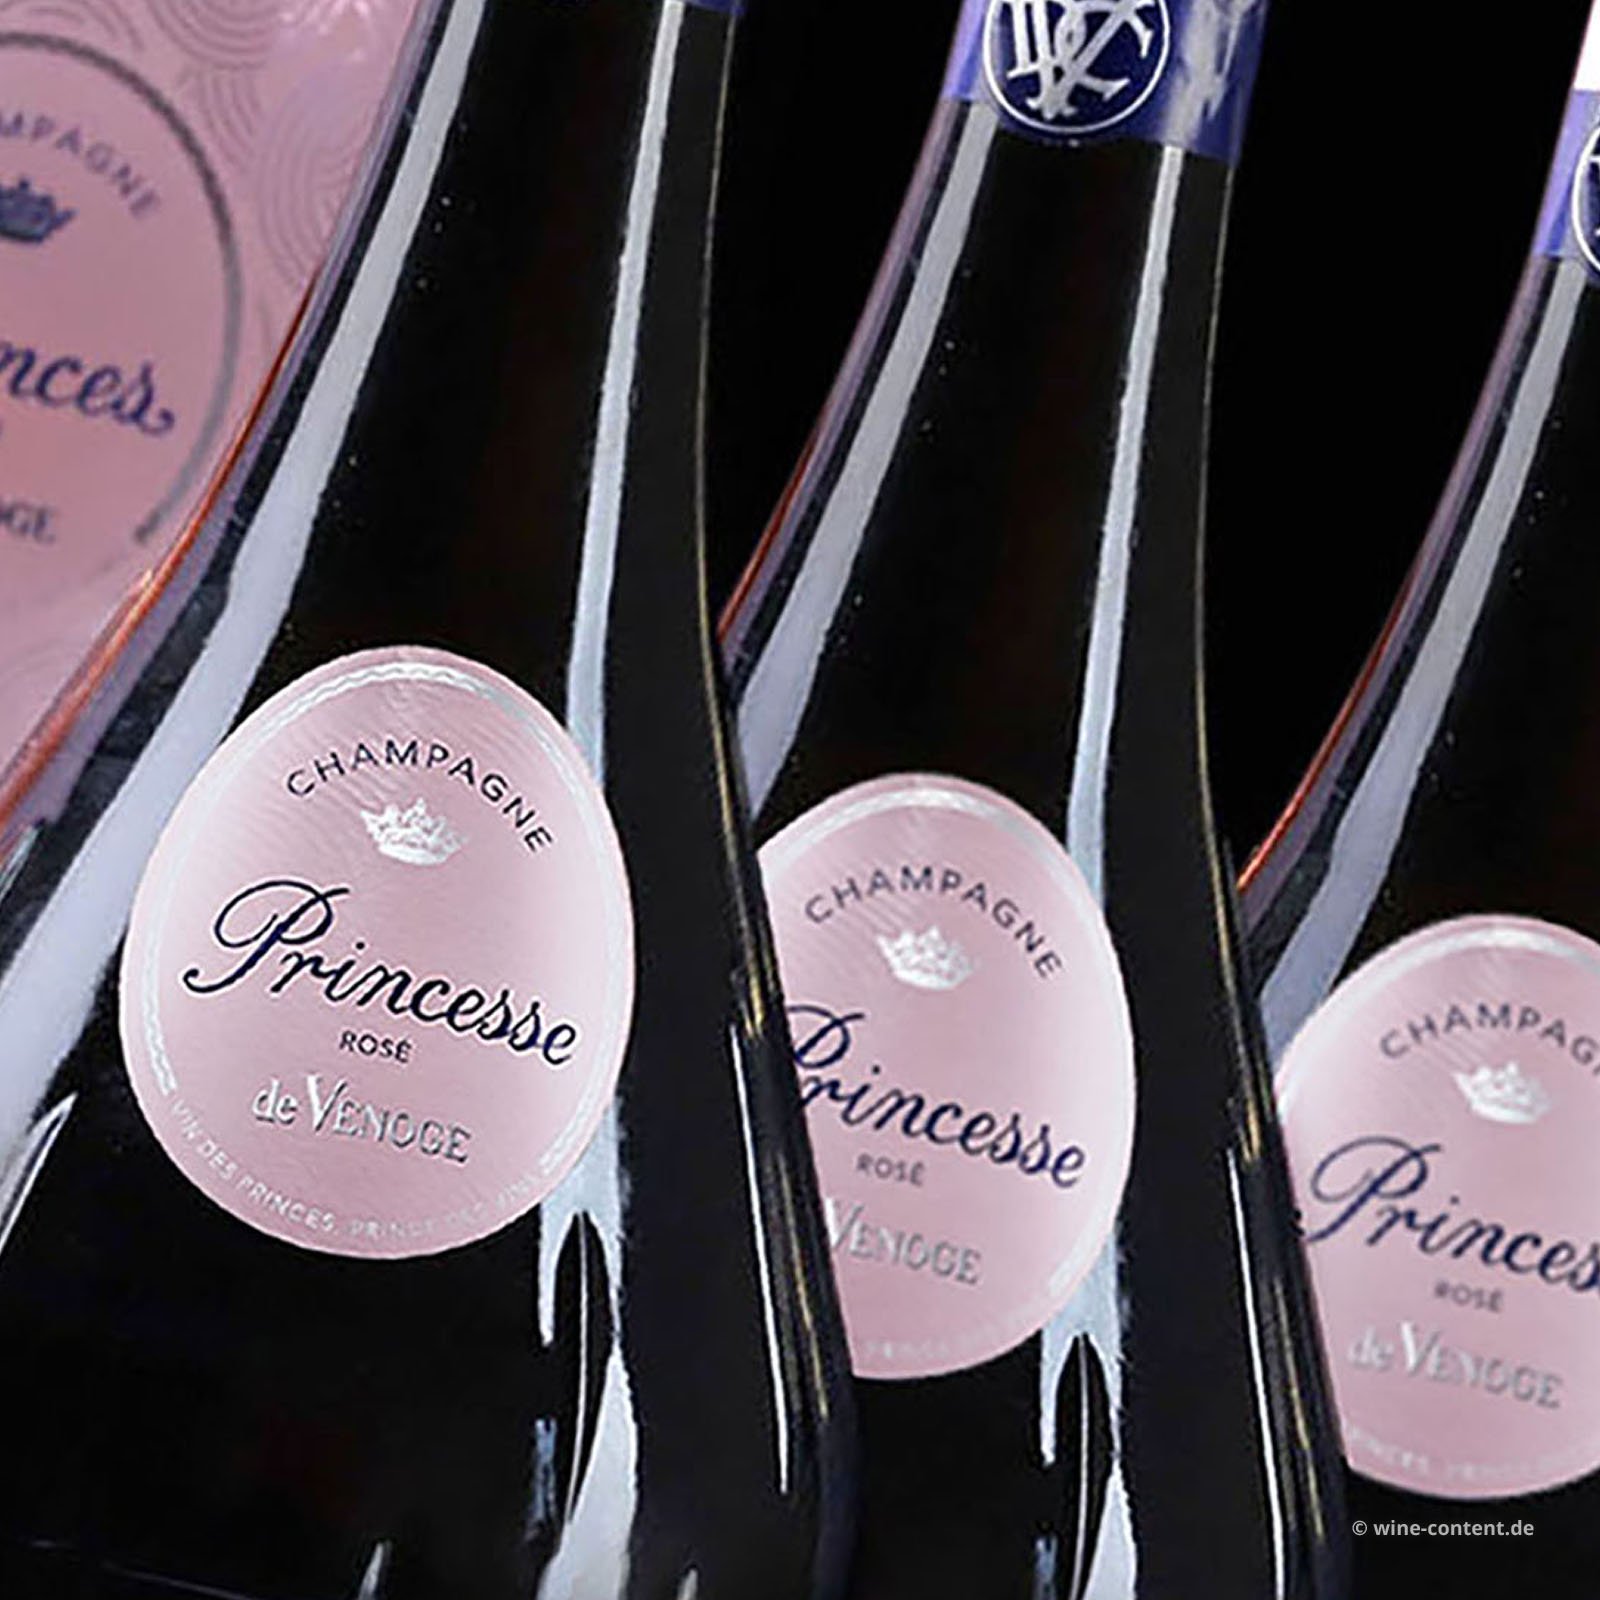 3er-Paket Champagner Rosé Princesse Brut